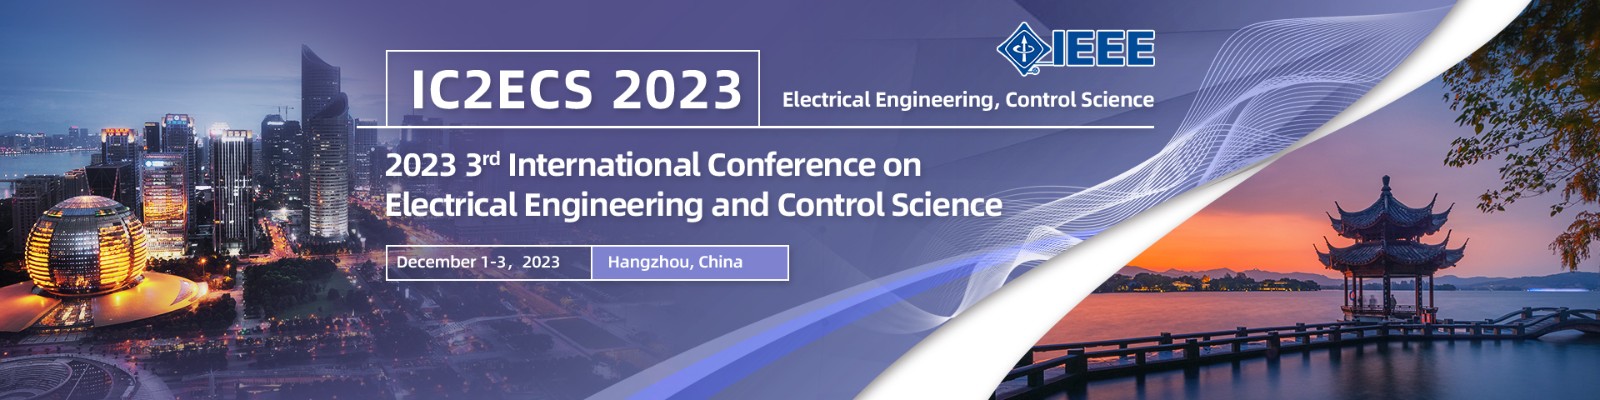 12月杭州-IC2ECS-2023-会议官网英.jpg